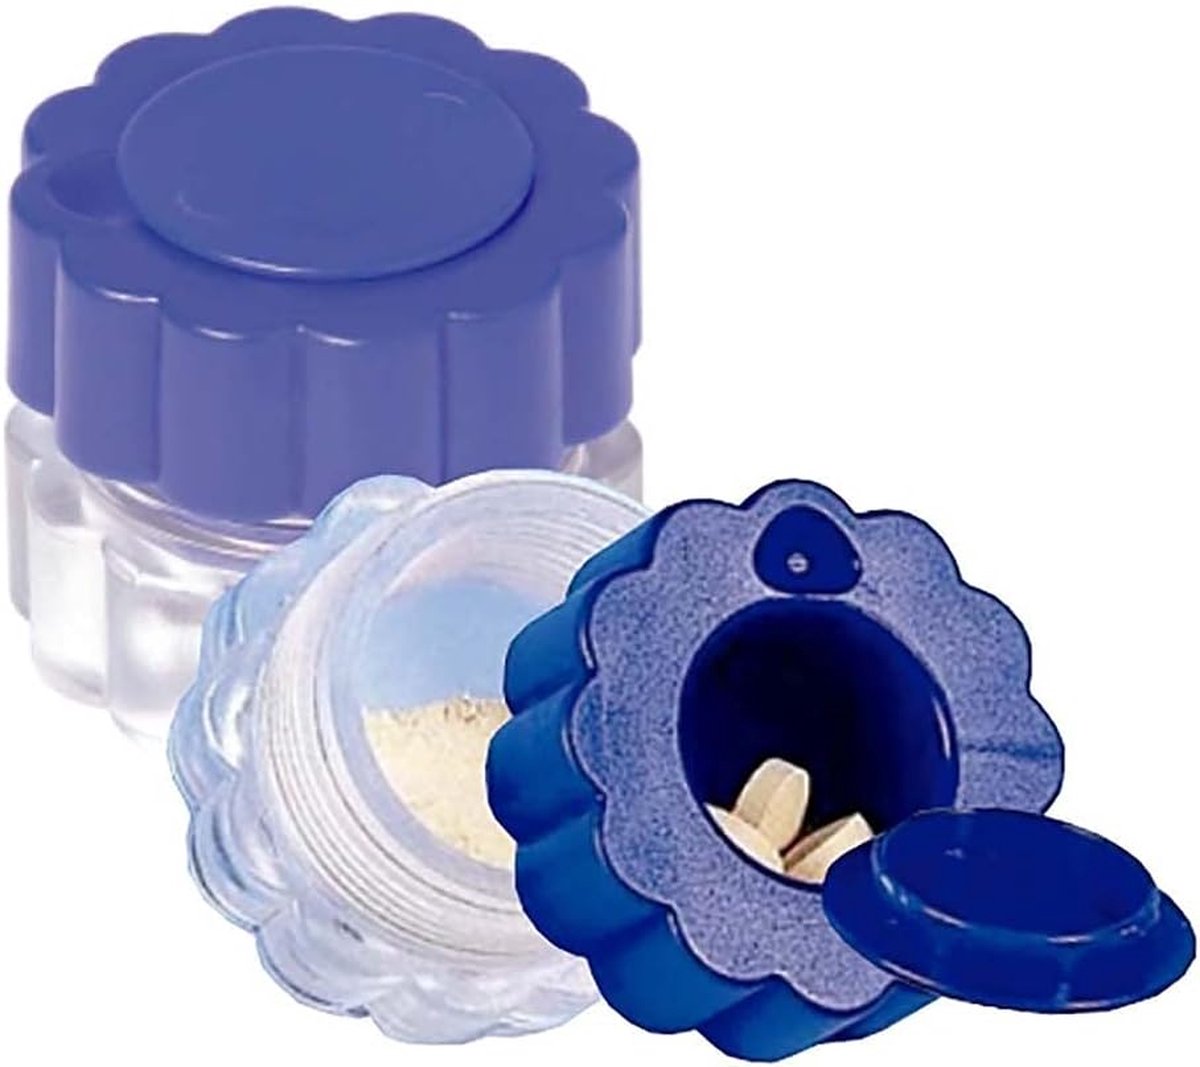 Pillenvergruizer - Pillen vergruizer - Pillenmaler - Tabletvergruizer - Pil crusher - Handmatig - Blauw